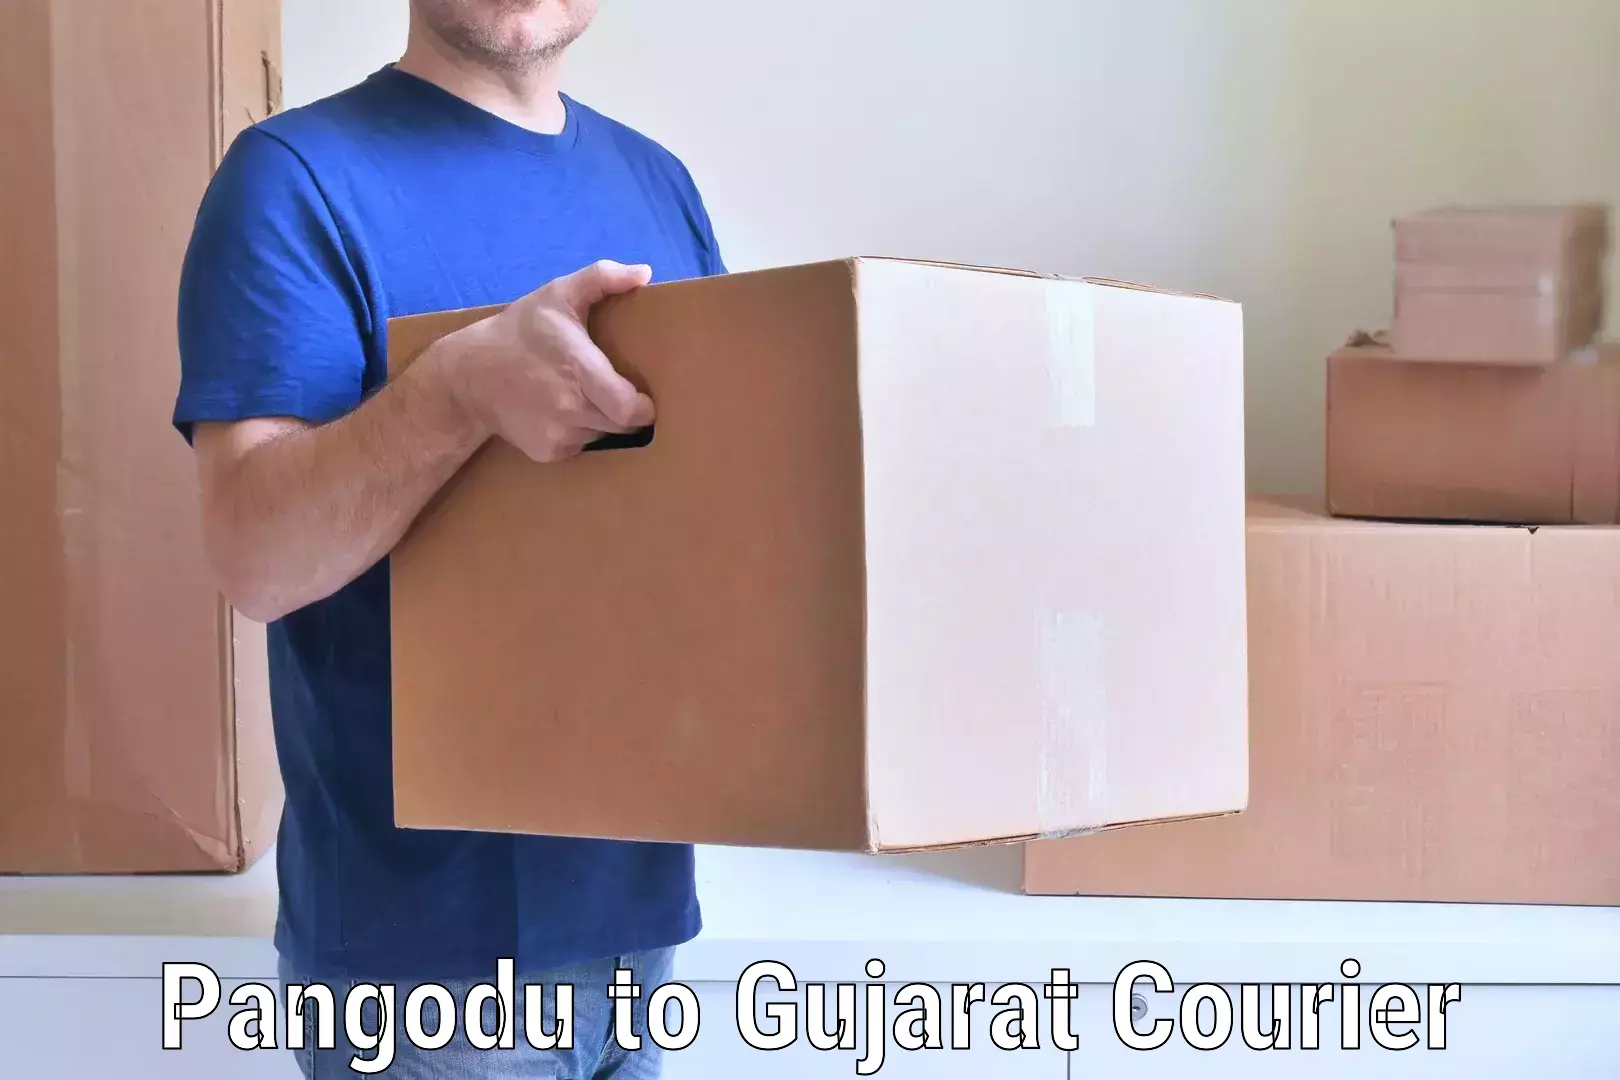 Furniture moving experts Pangodu to Gujarat